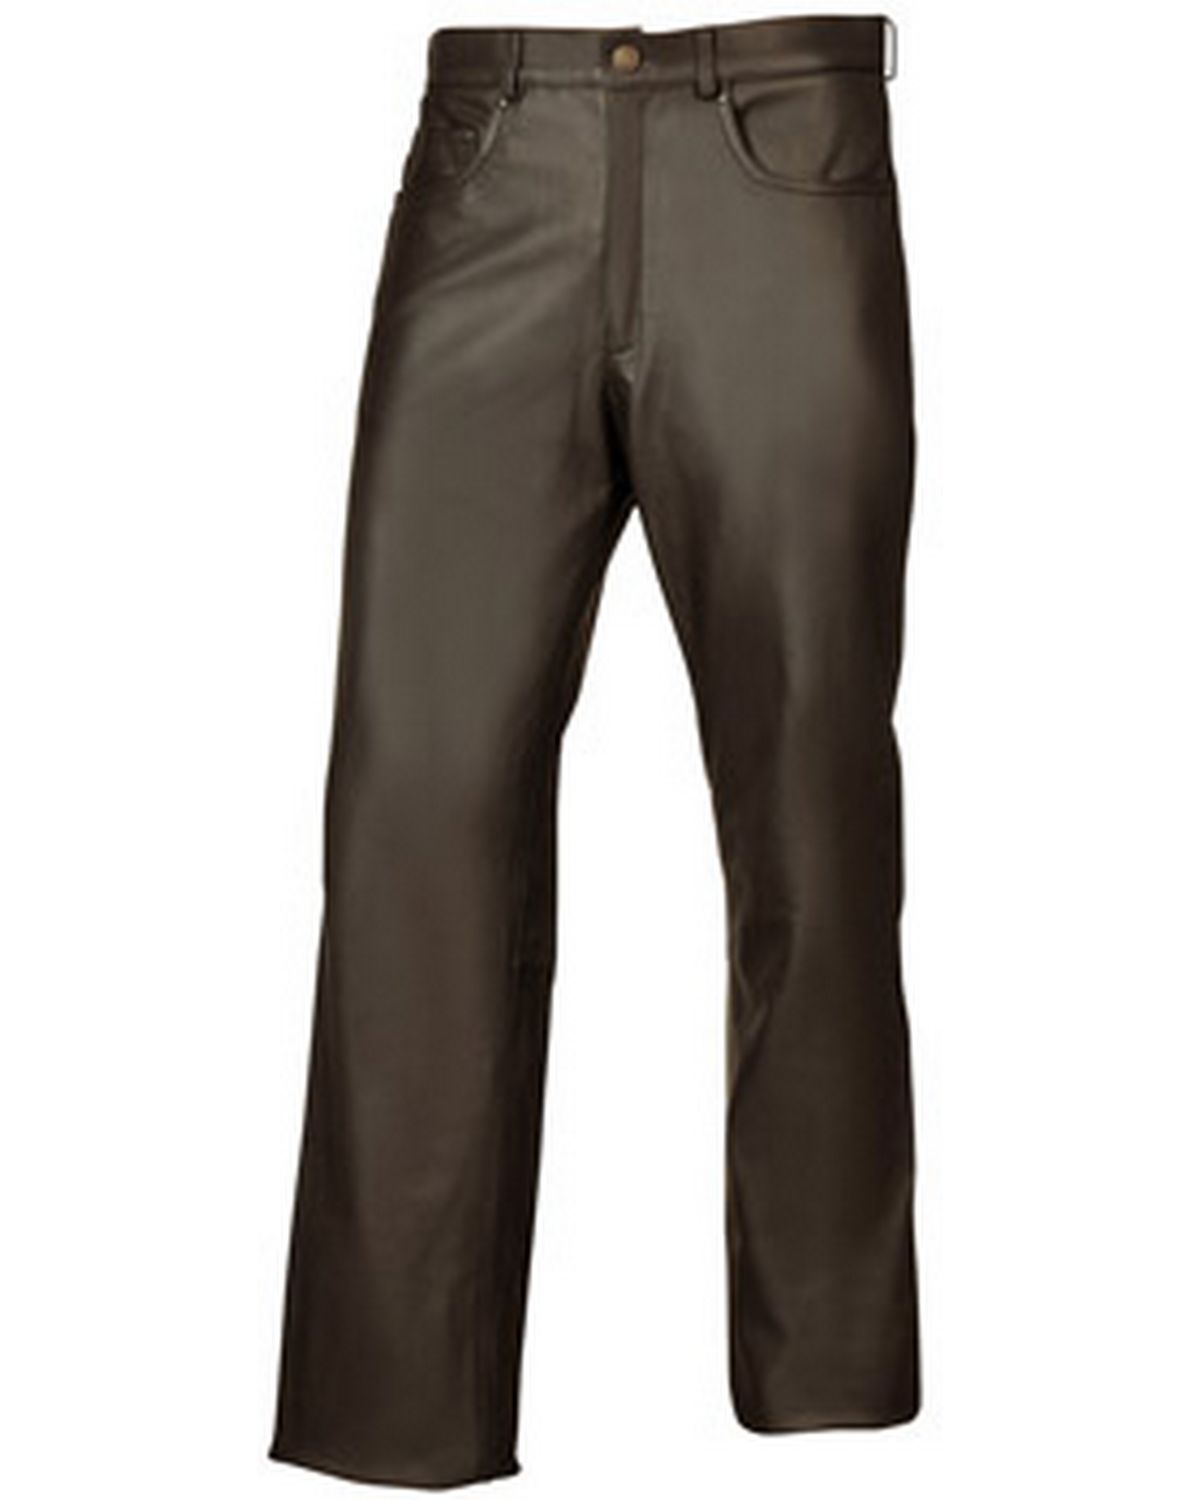 Pantalon cuir homme pas cher : achetez un pantalon en cuir - Moncuir